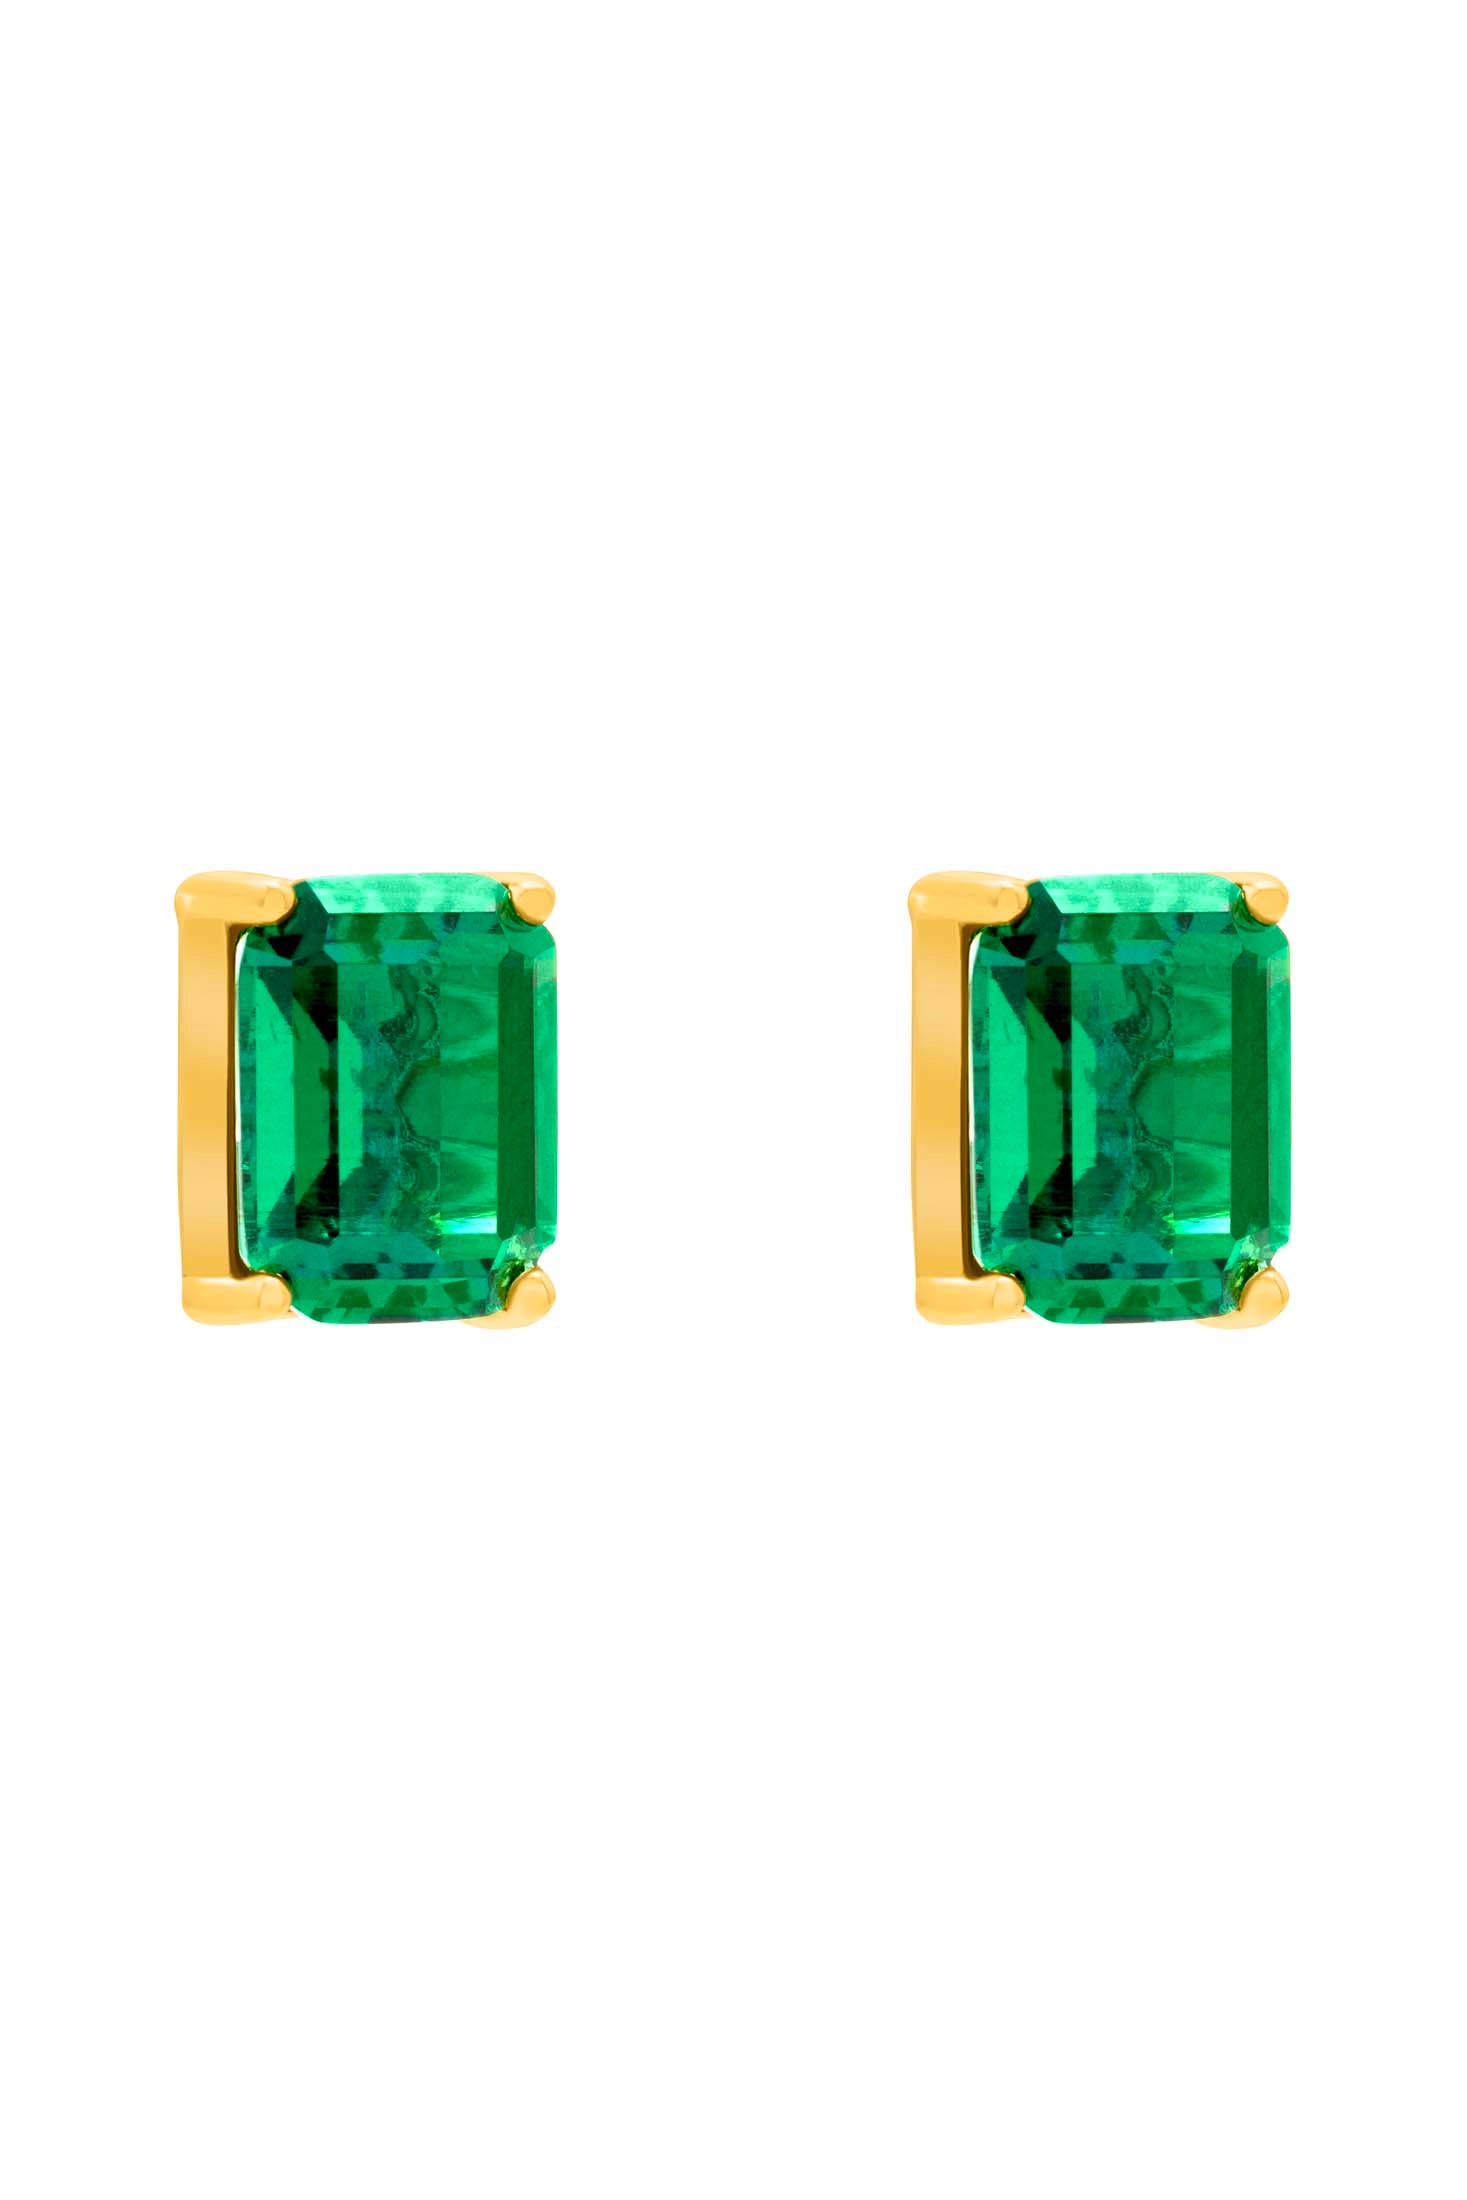 Emerald Stud Earring Set in 18k Gold Vermeil